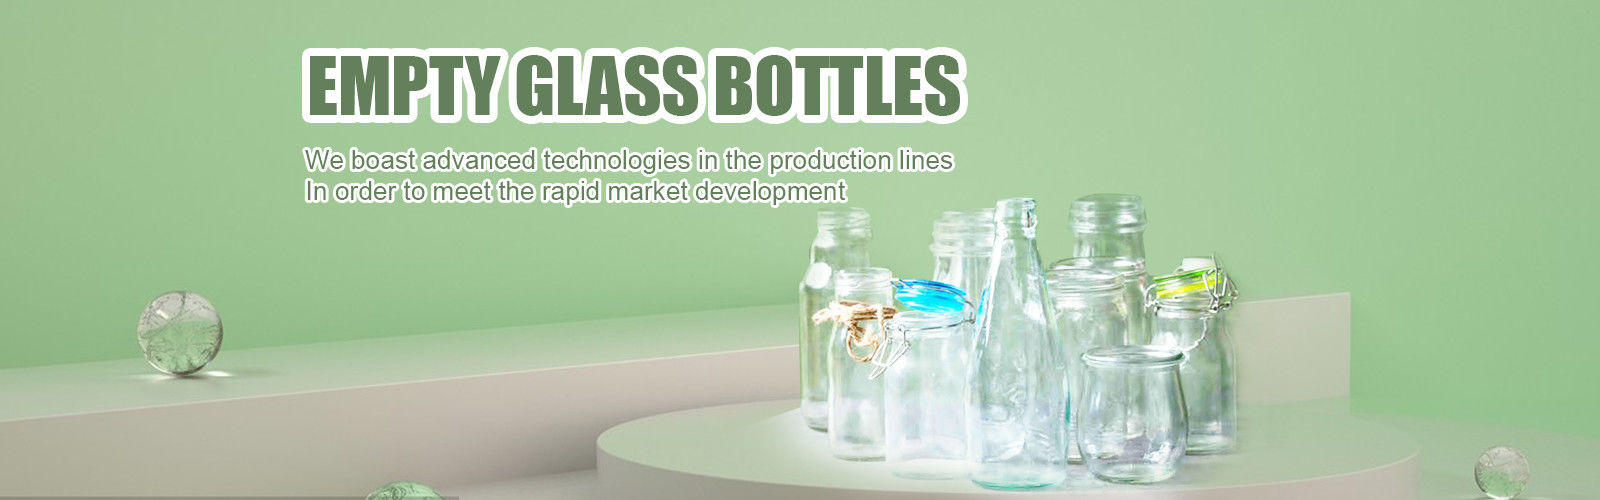 botellas de cristal cosméticas